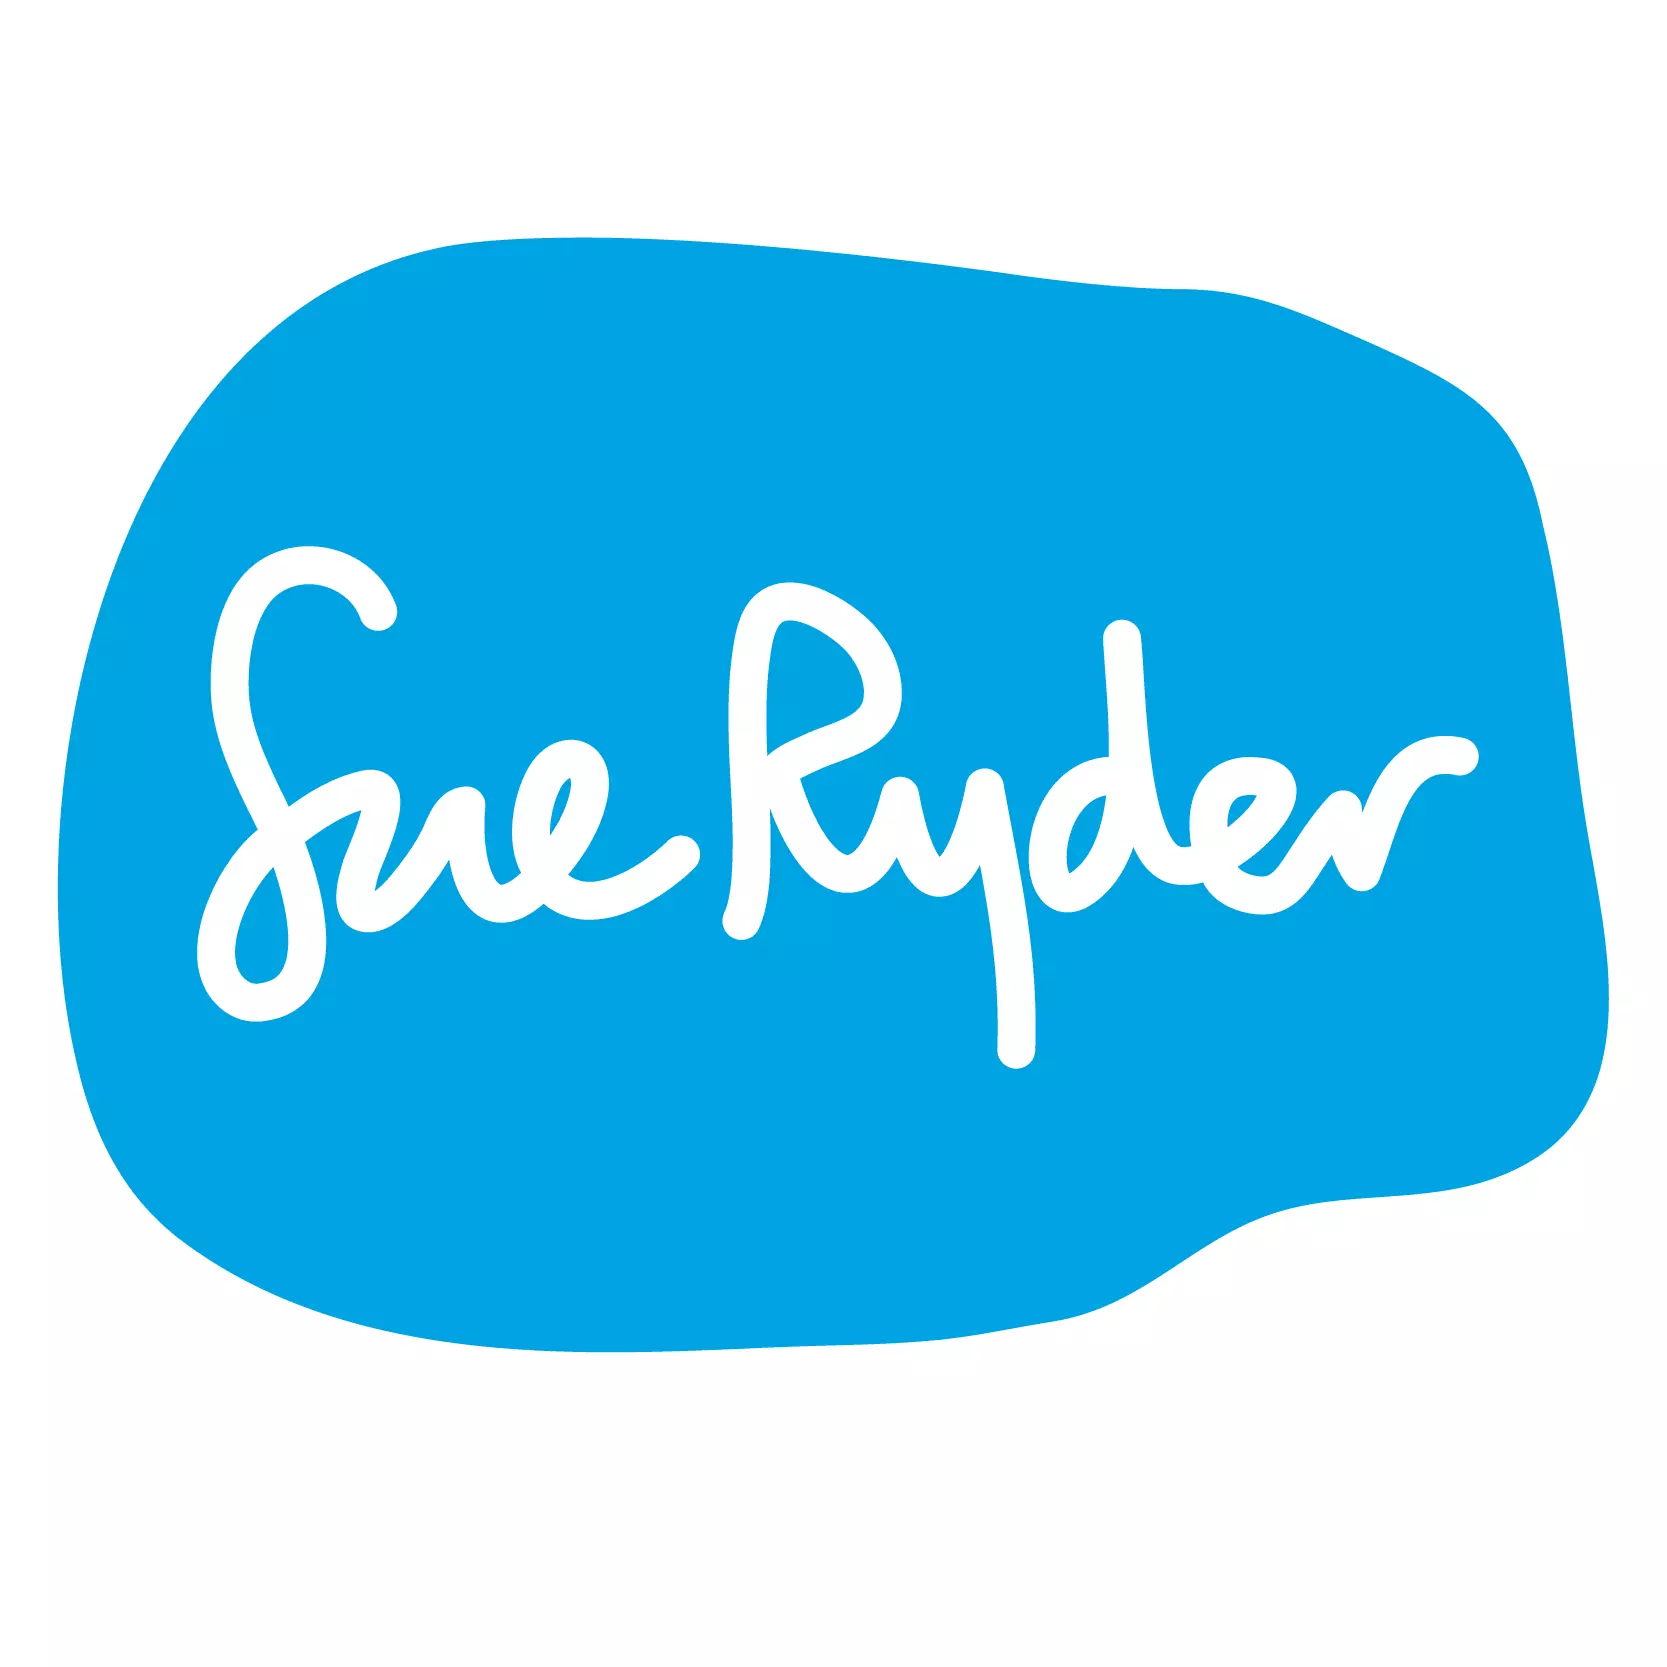 Sue Ryder square logo